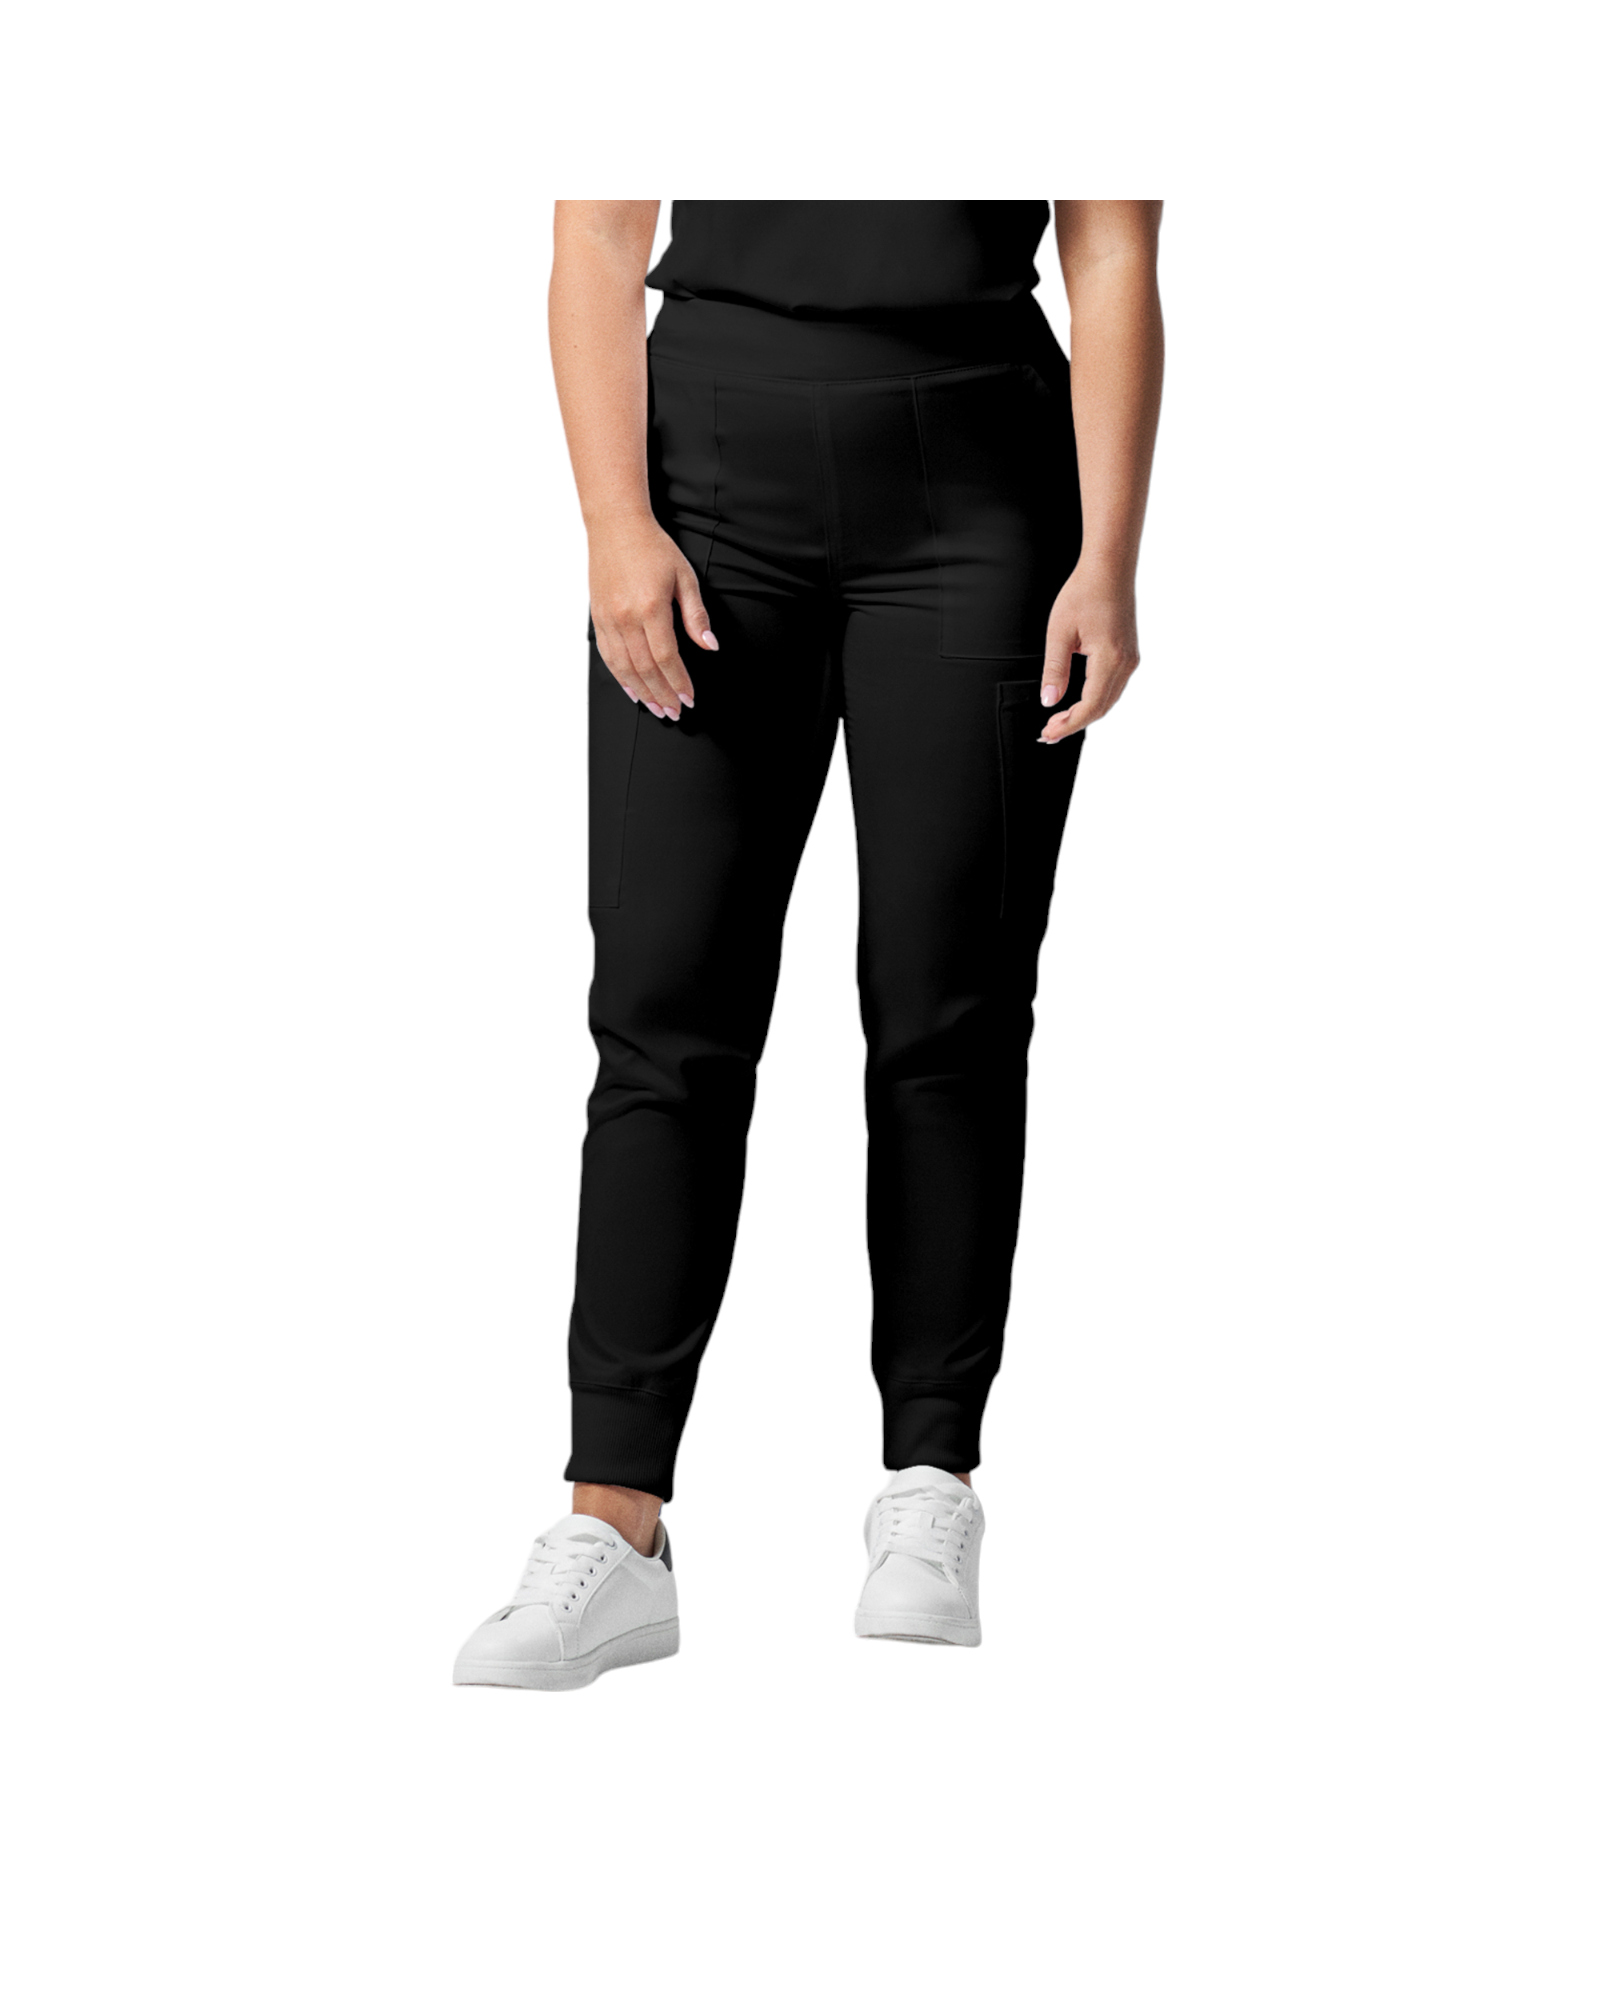 Pantalon de style jogger 6 poches pour femmes Landau Proflex #LB406 couleur Noir